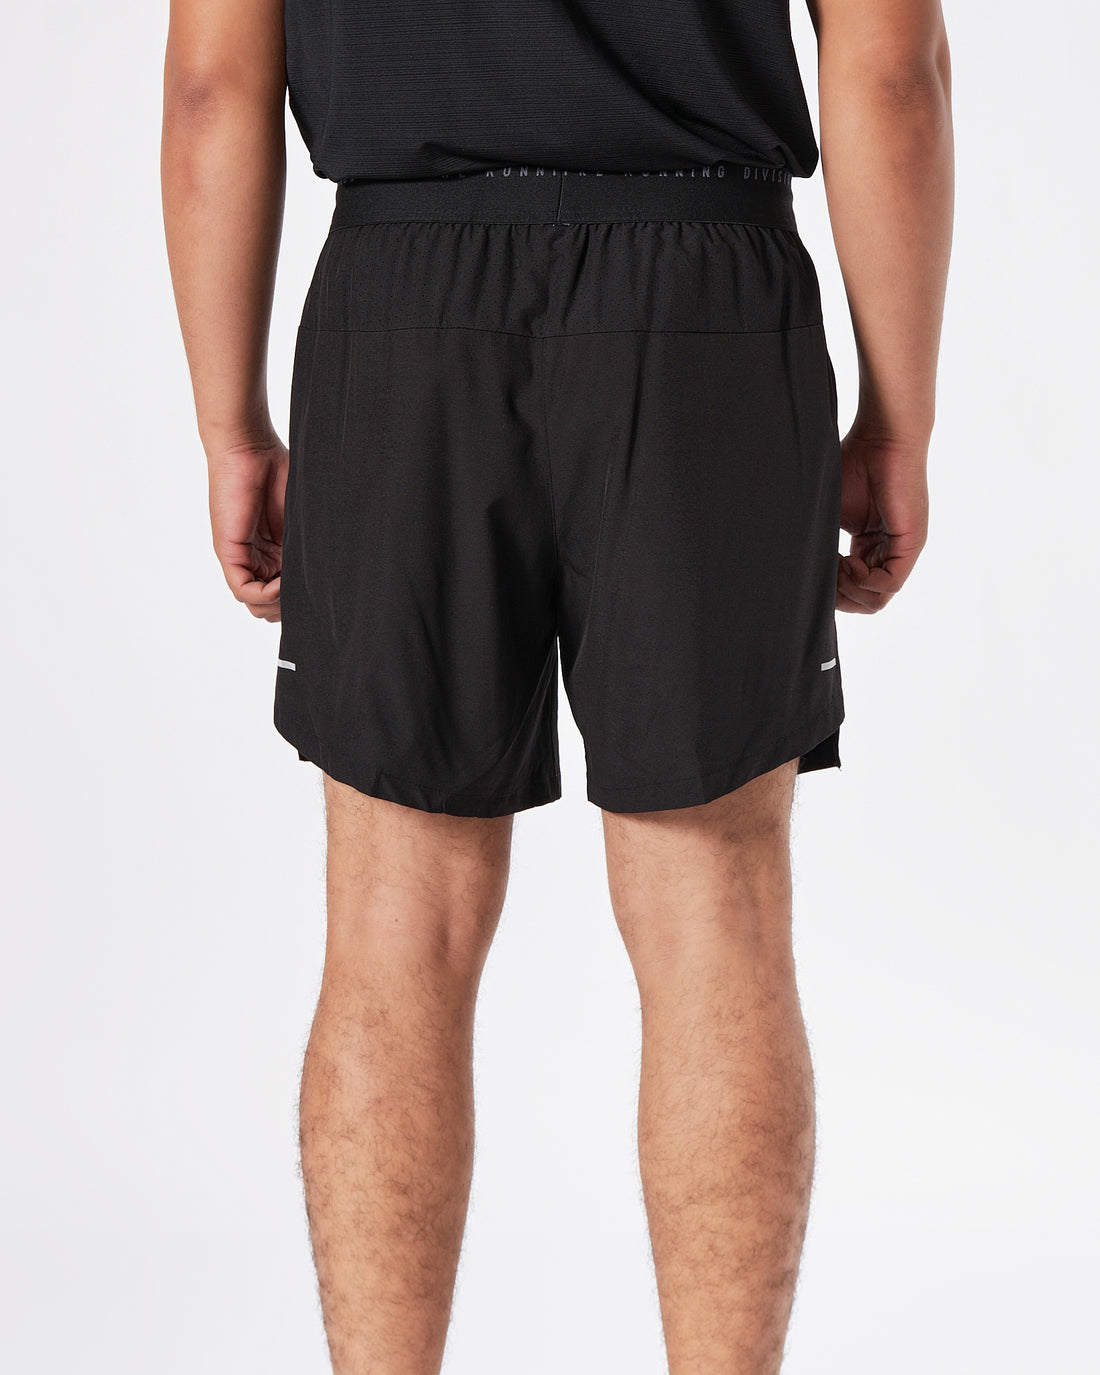 NIK Triple Swooh Printed Men Black Track Shorts 13.90